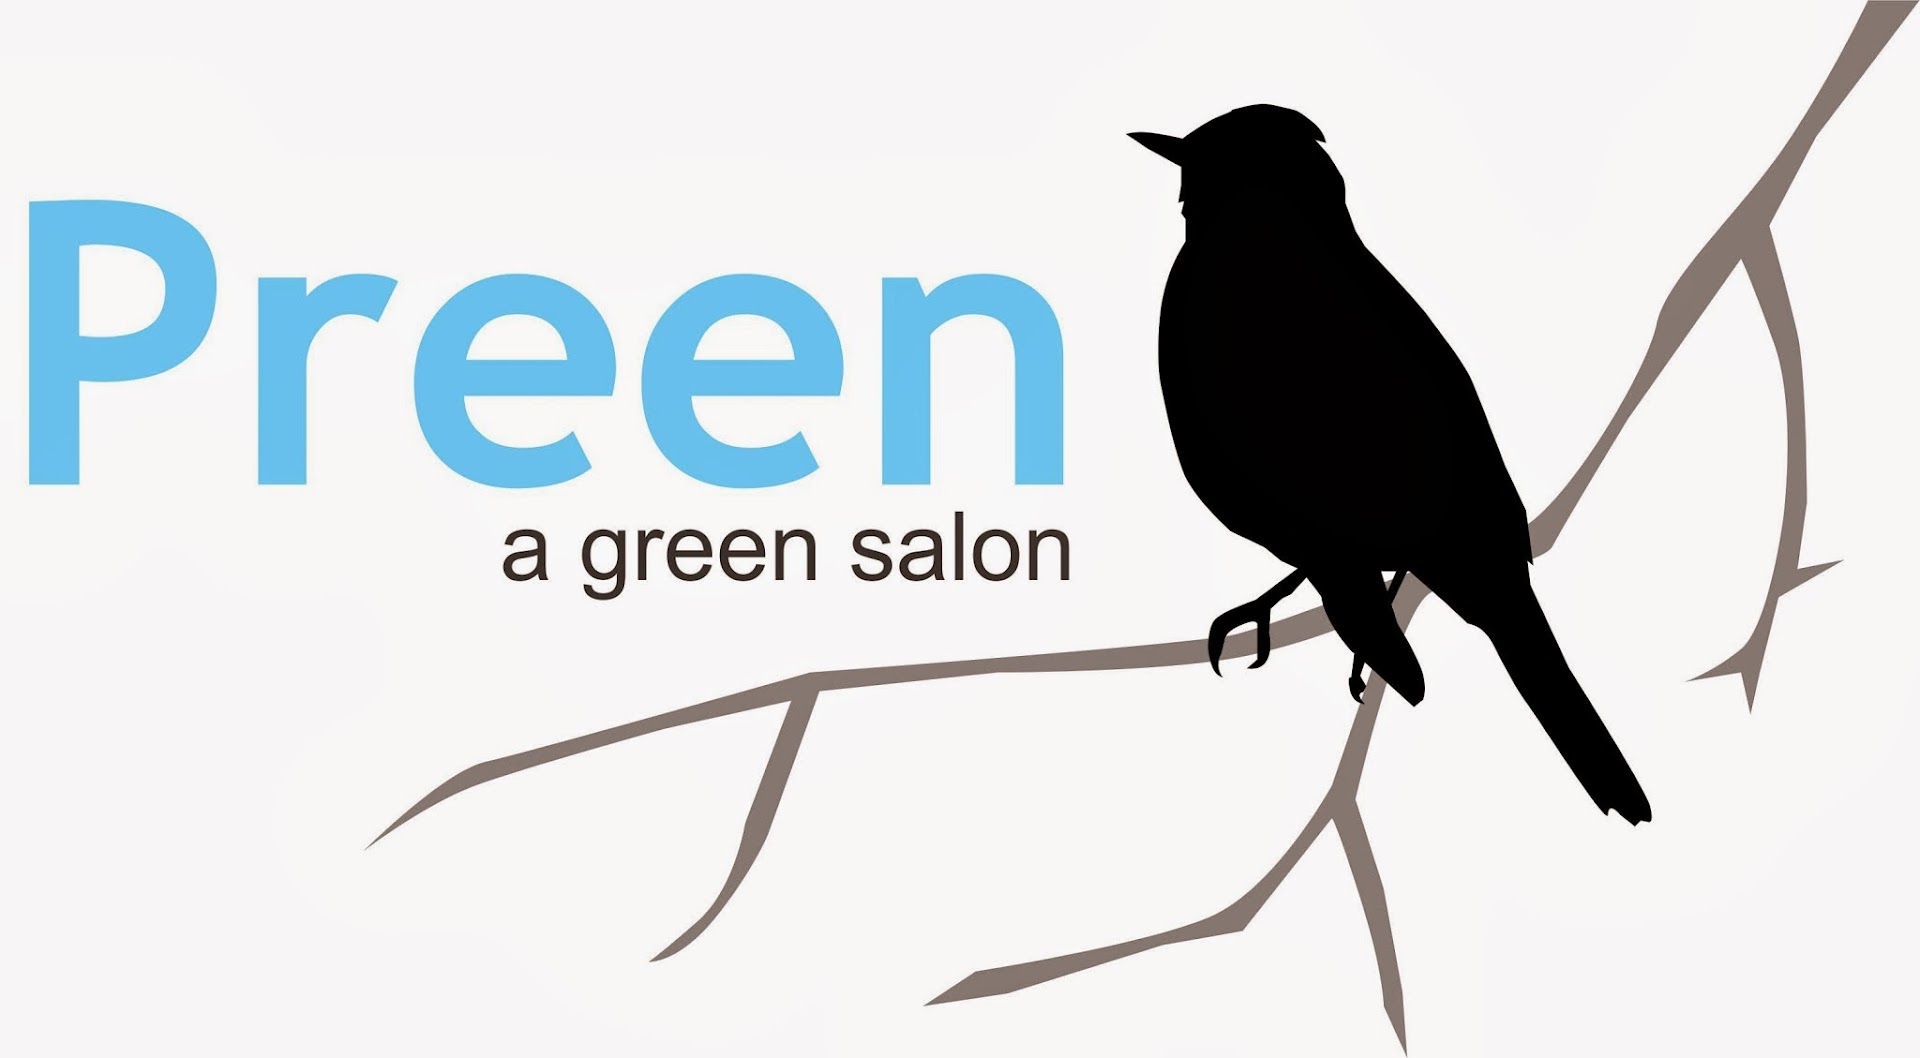 Preen a green salon